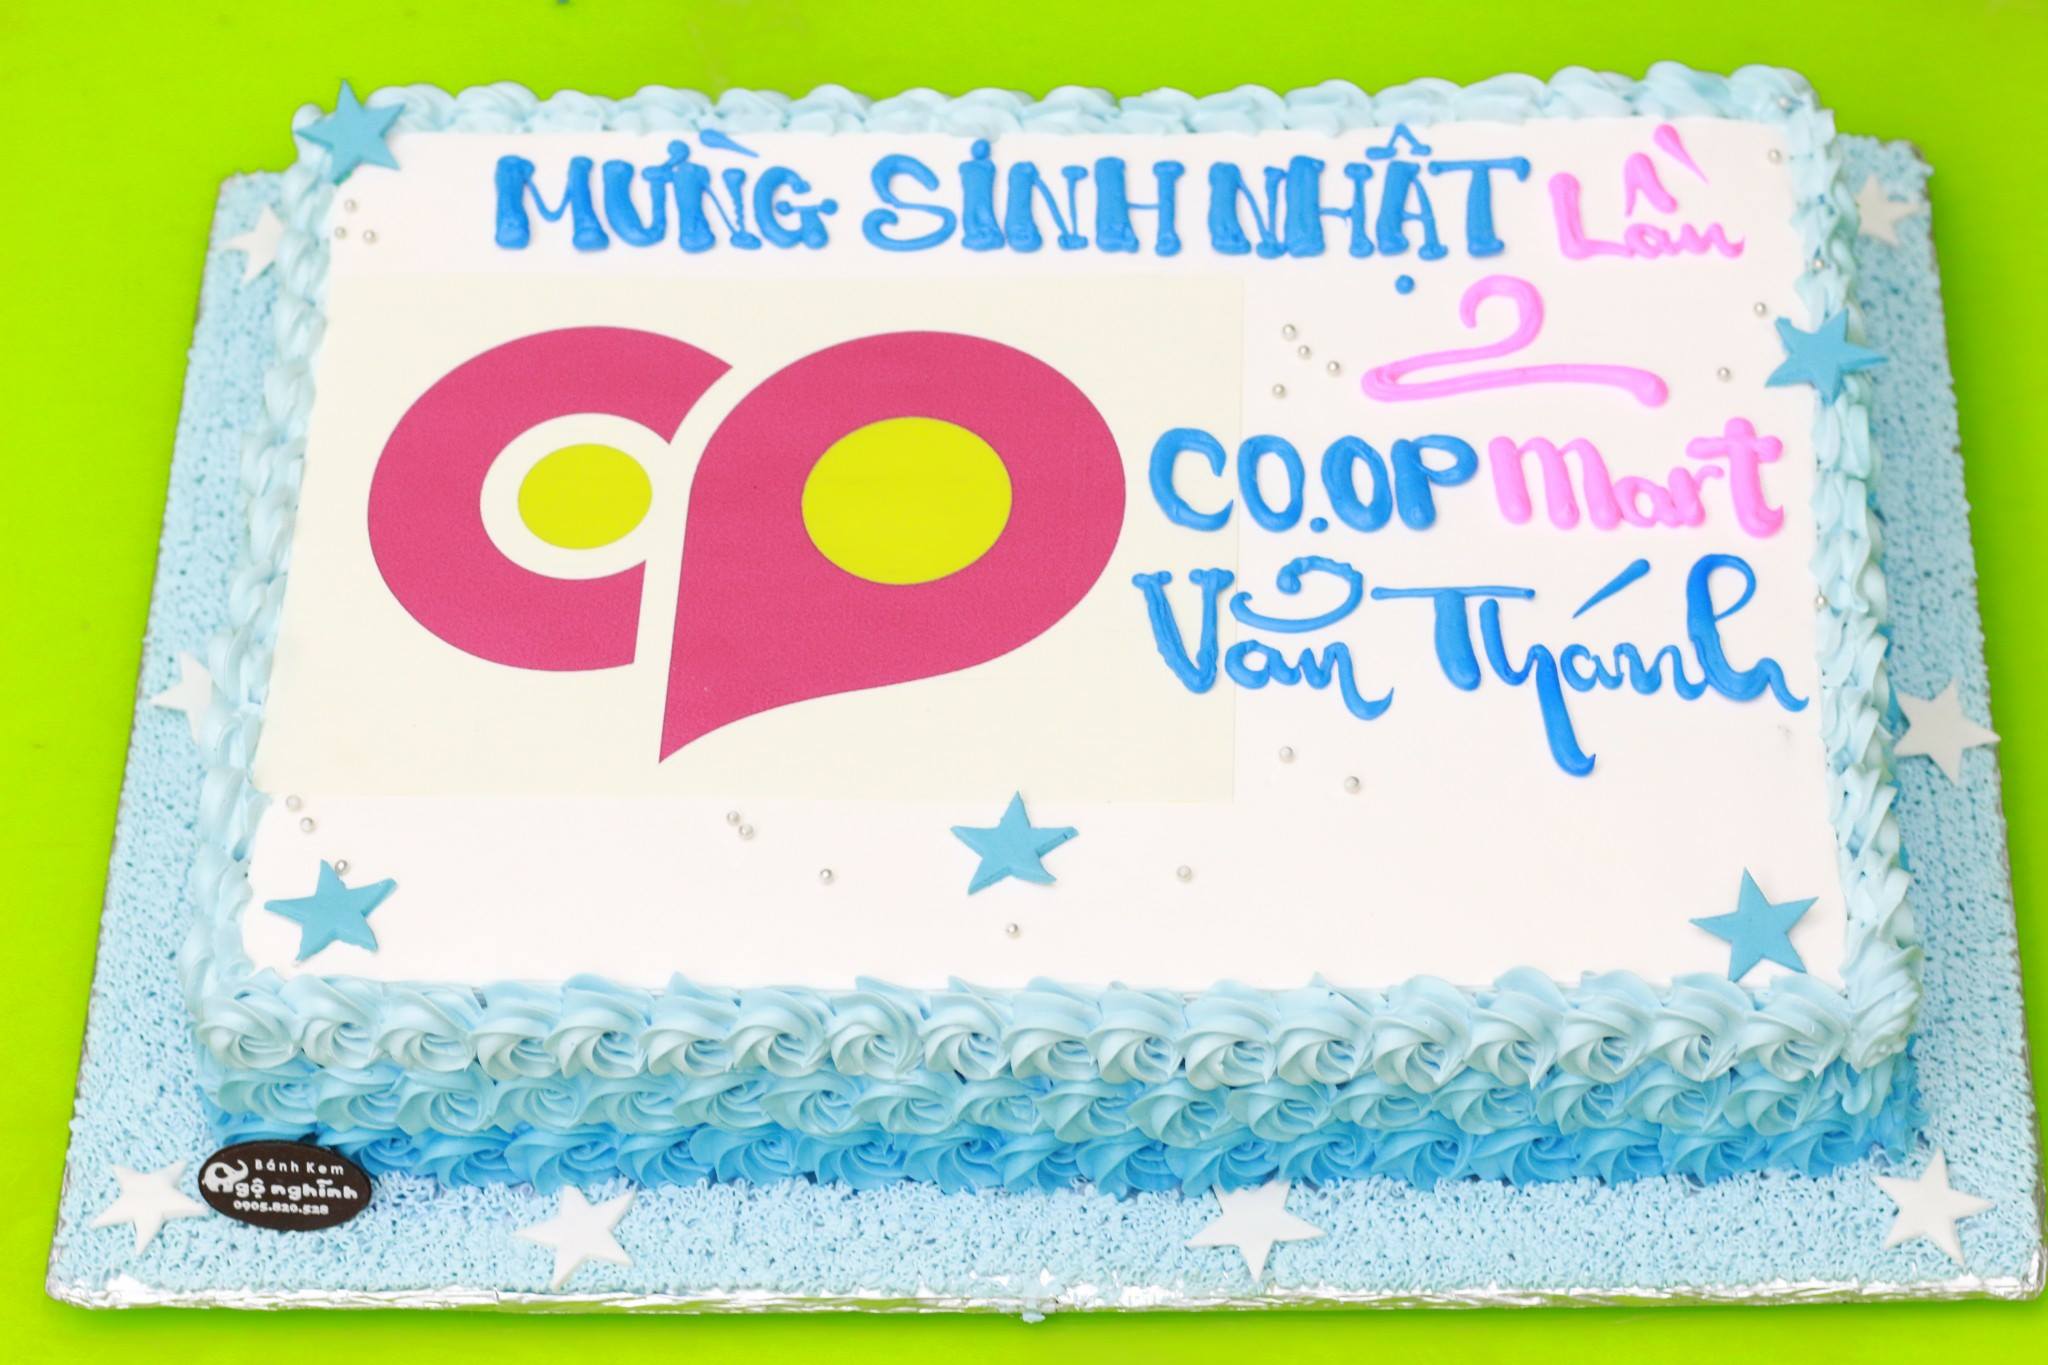 Saigon Coop chi 270 tỷ đồng khuyến mãi khủng mừng sinh nhật Coopmart tuổi  27